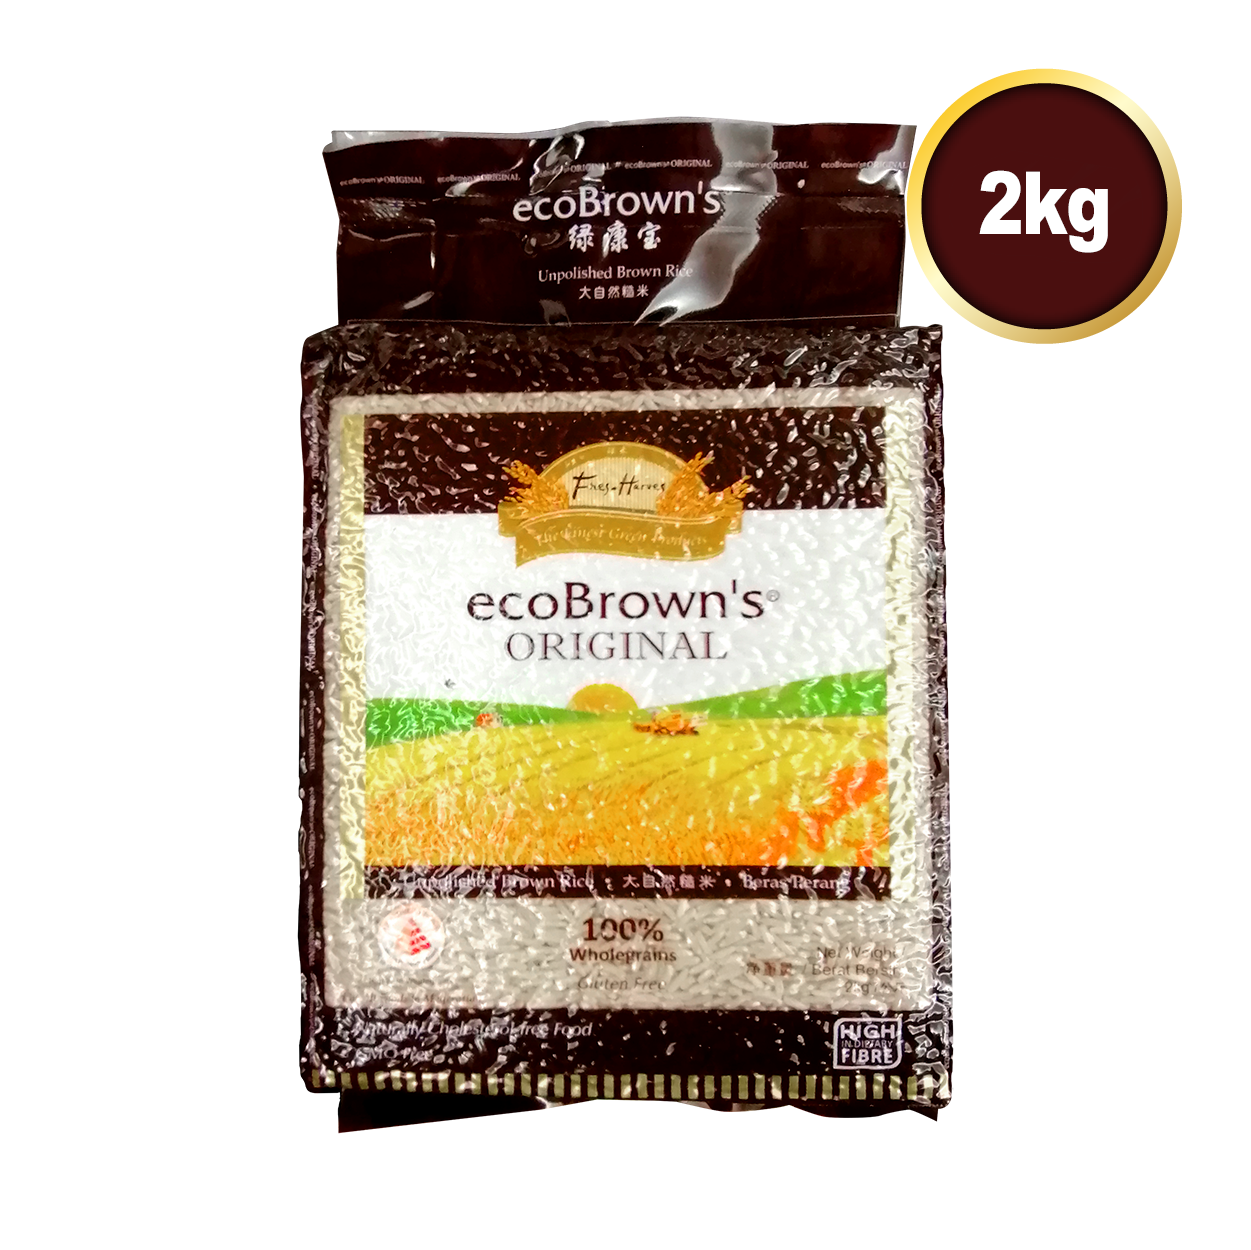 ecoBrown's ORIGINAL 2kg